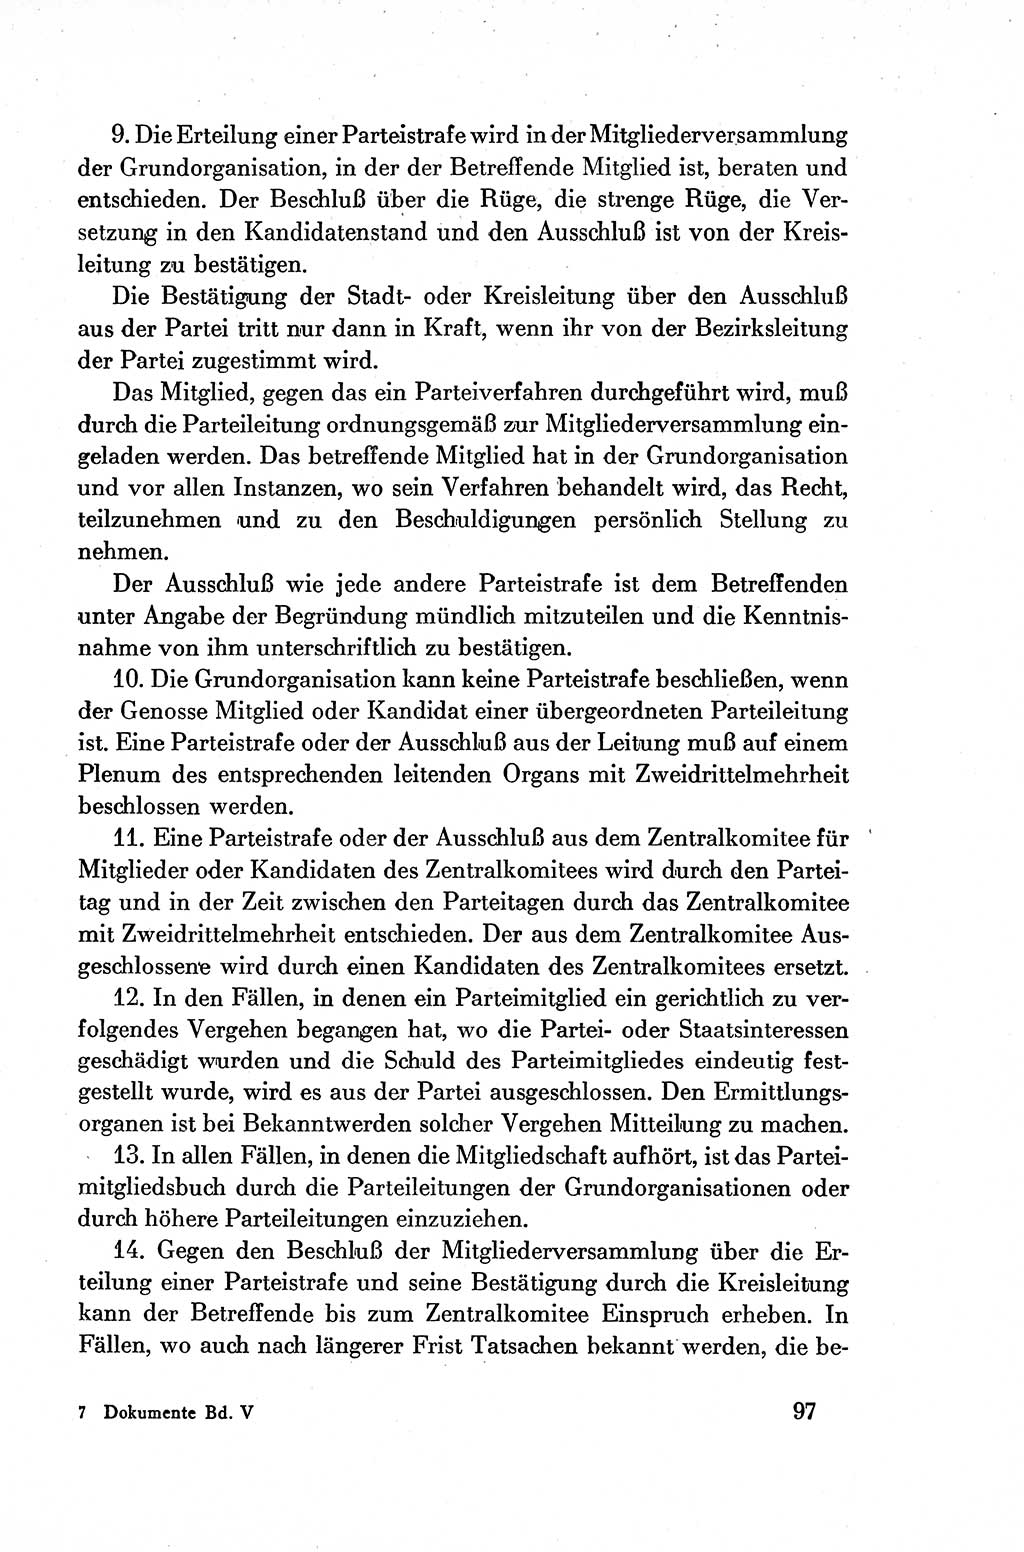 Dokumente der Sozialistischen Einheitspartei Deutschlands (SED) [Deutsche Demokratische Republik (DDR)] 1954-1955, Seite 97 (Dok. SED DDR 1954-1955, S. 97)